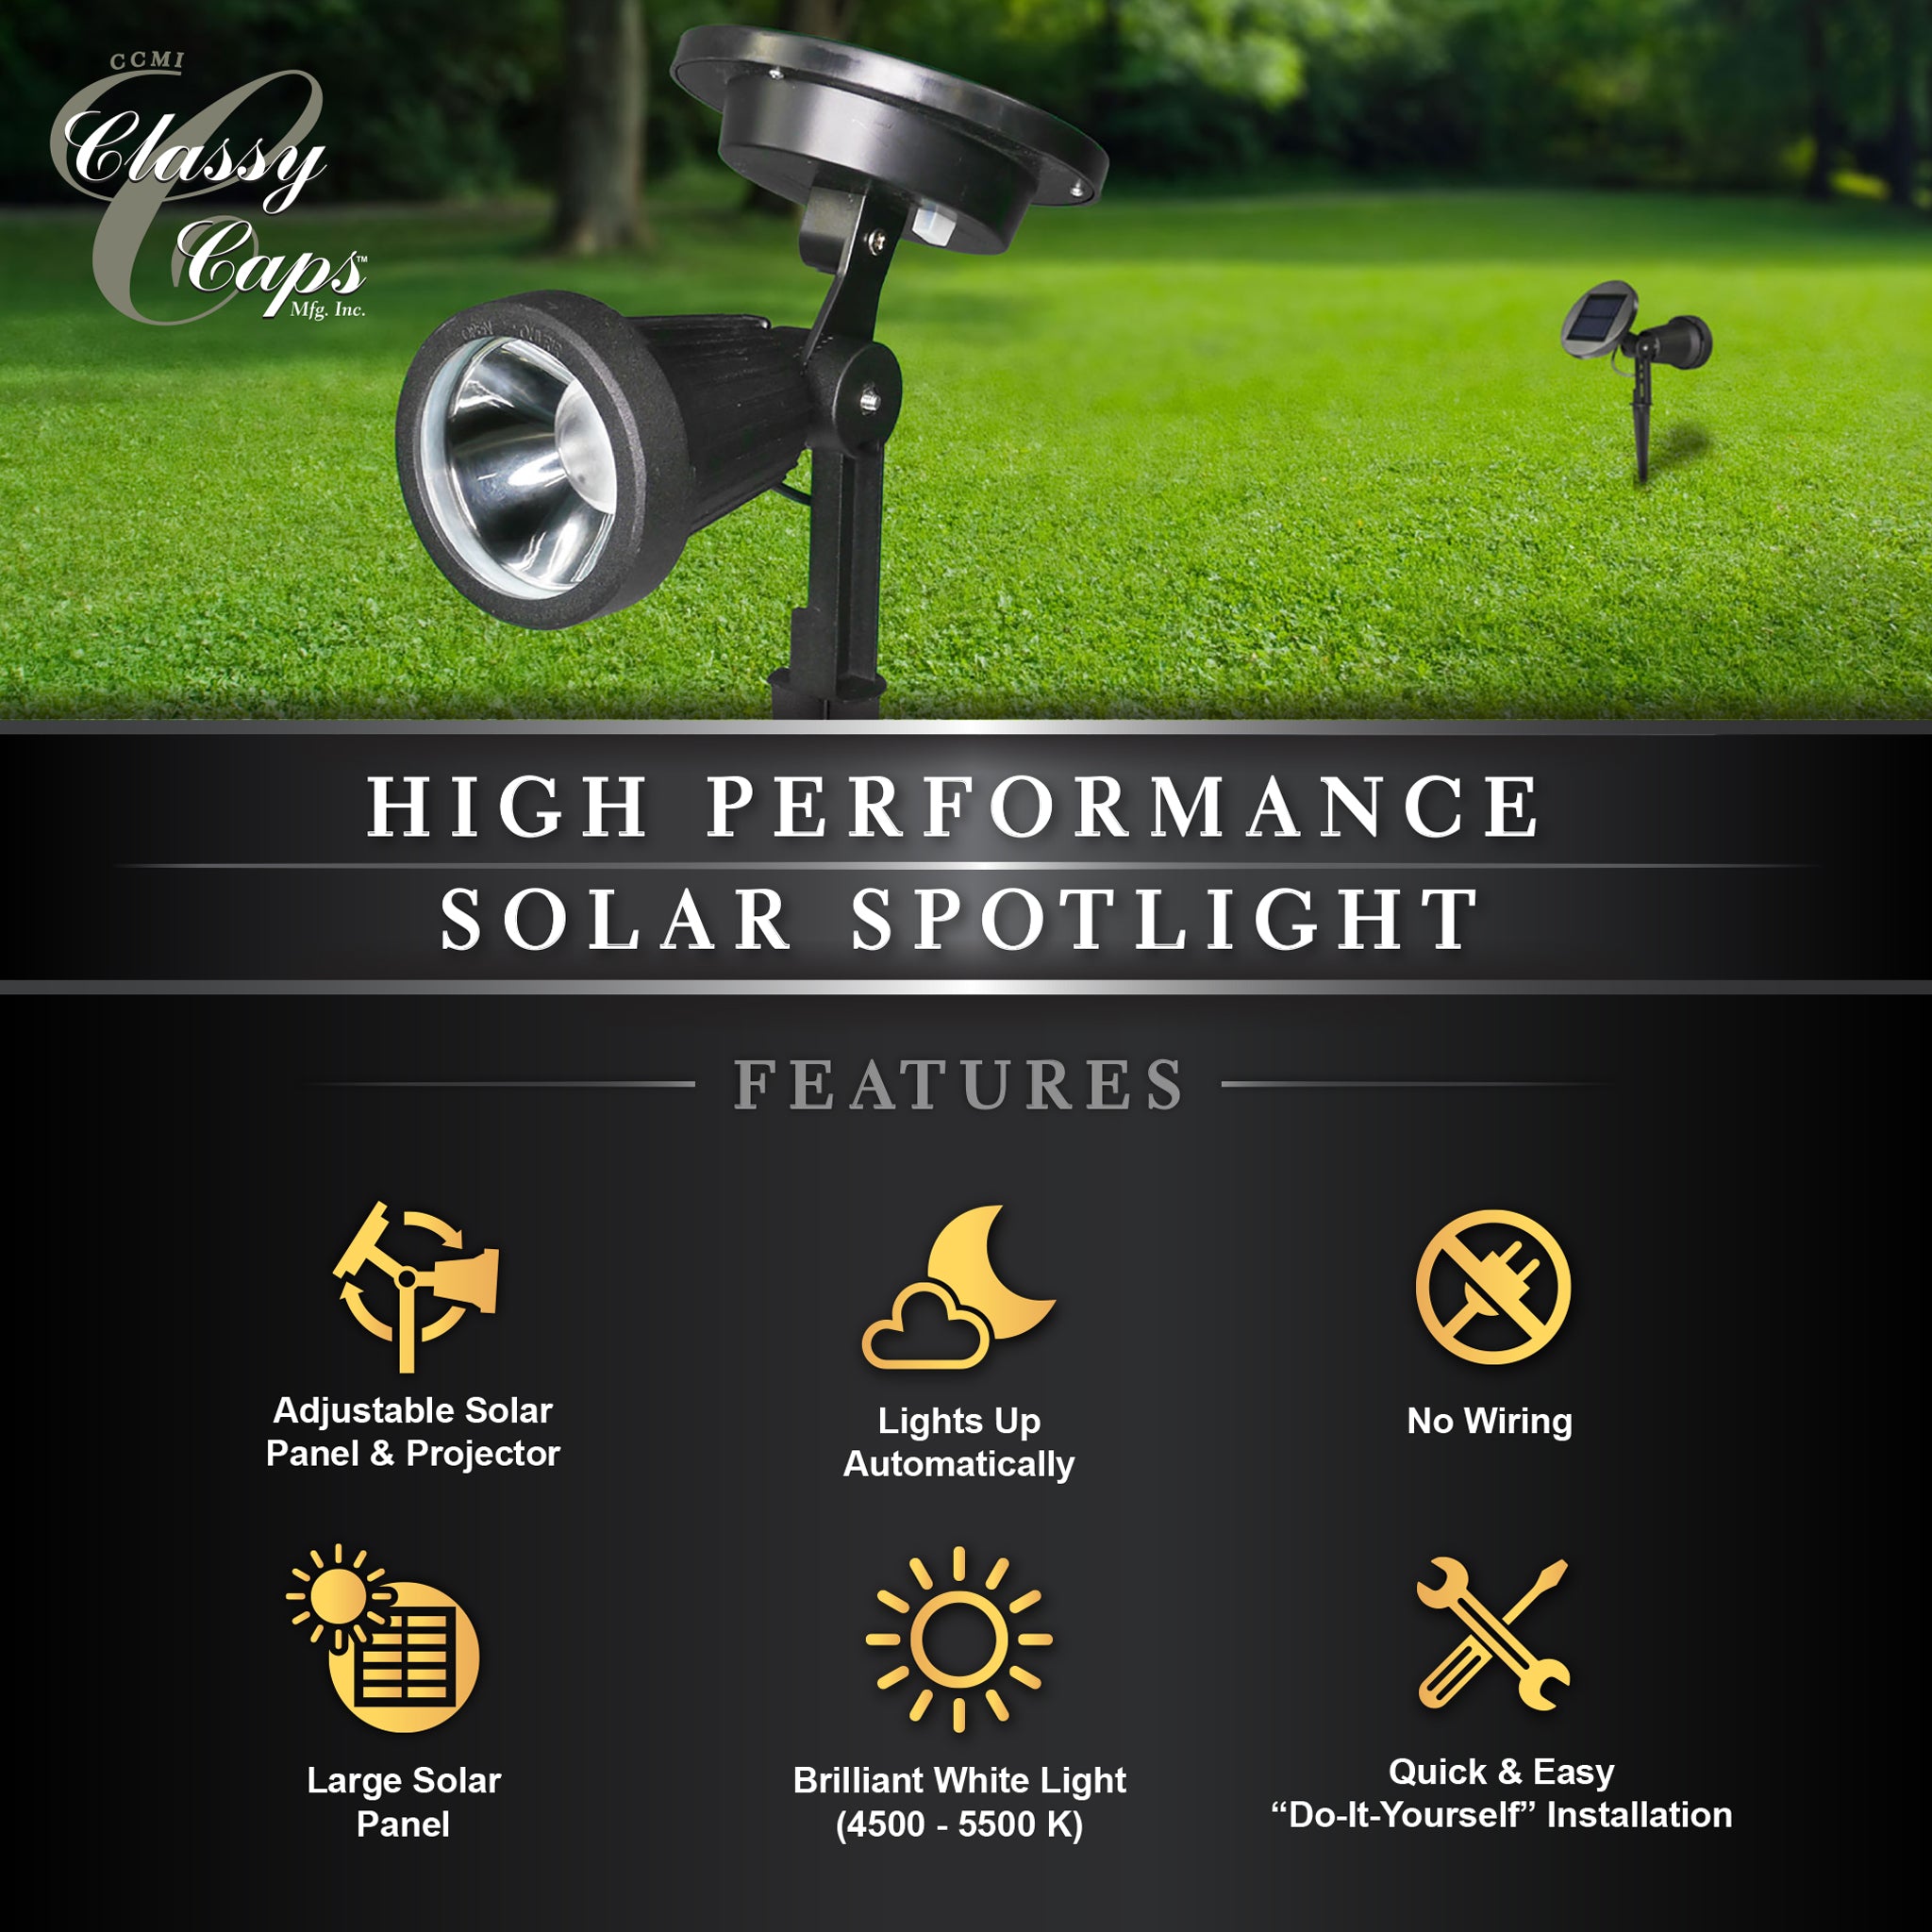 High Performance Solar Spotlight